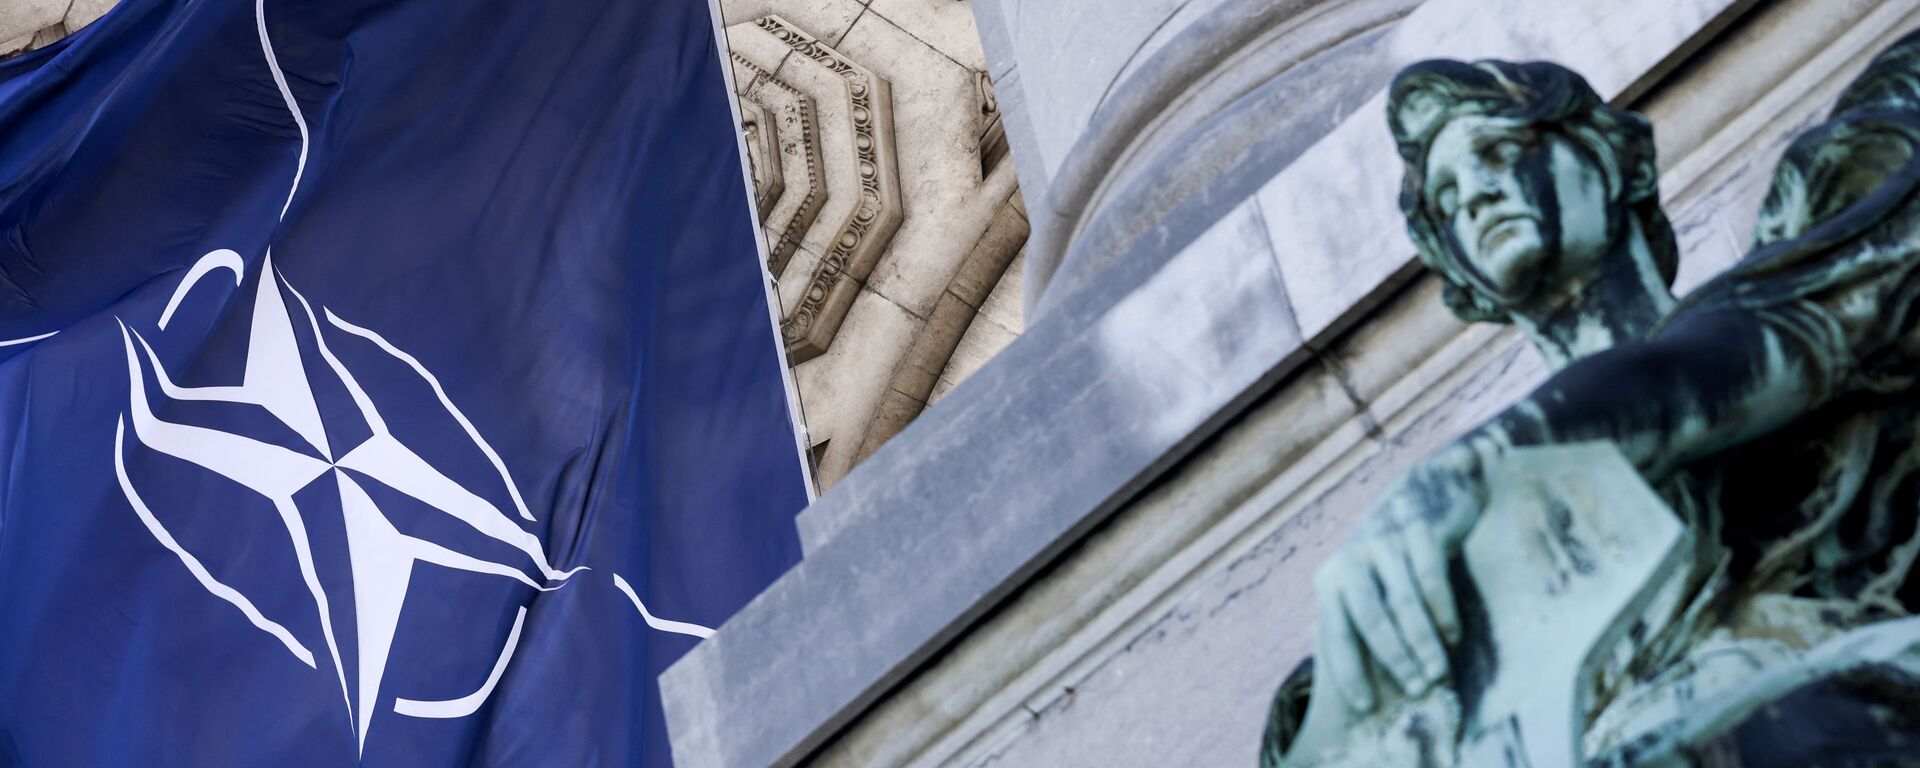 Bandeira da OTAN ao lado de estátua no Parque do Cinquentenário, Bruxelas, Bélgica, 13 de junho de 2021 - Sputnik Brasil, 1920, 01.04.2022